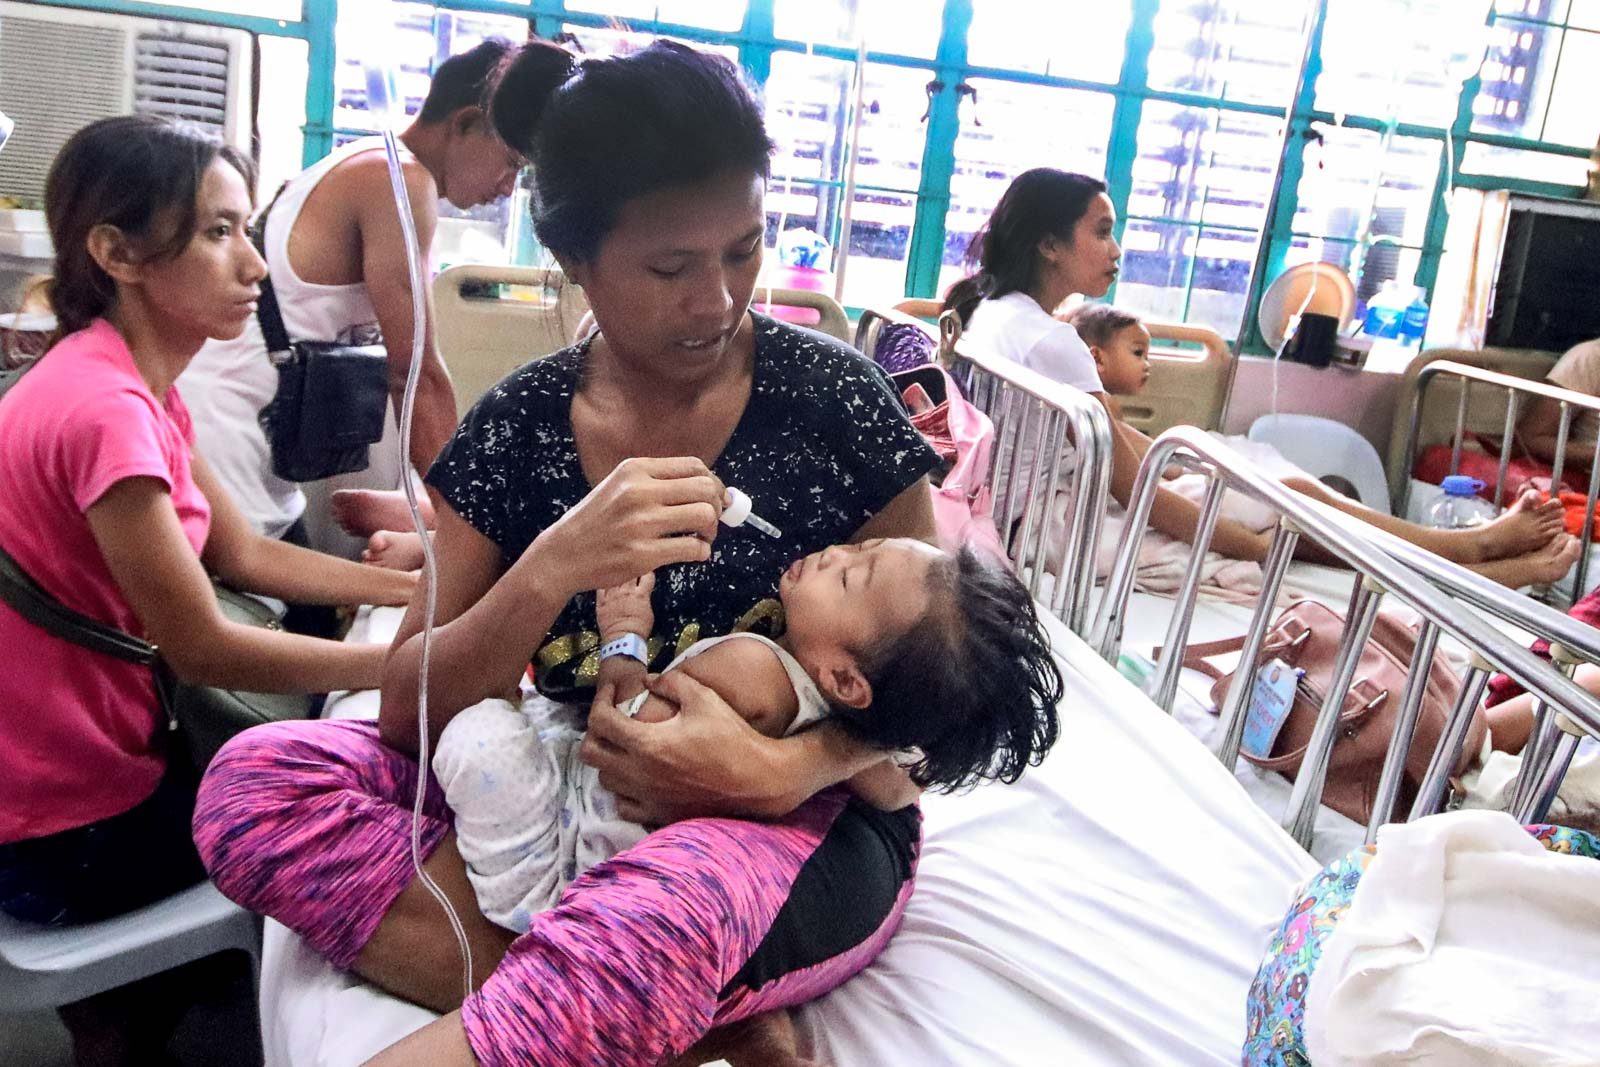 More dengue cases in Metro Manila cities in 2019